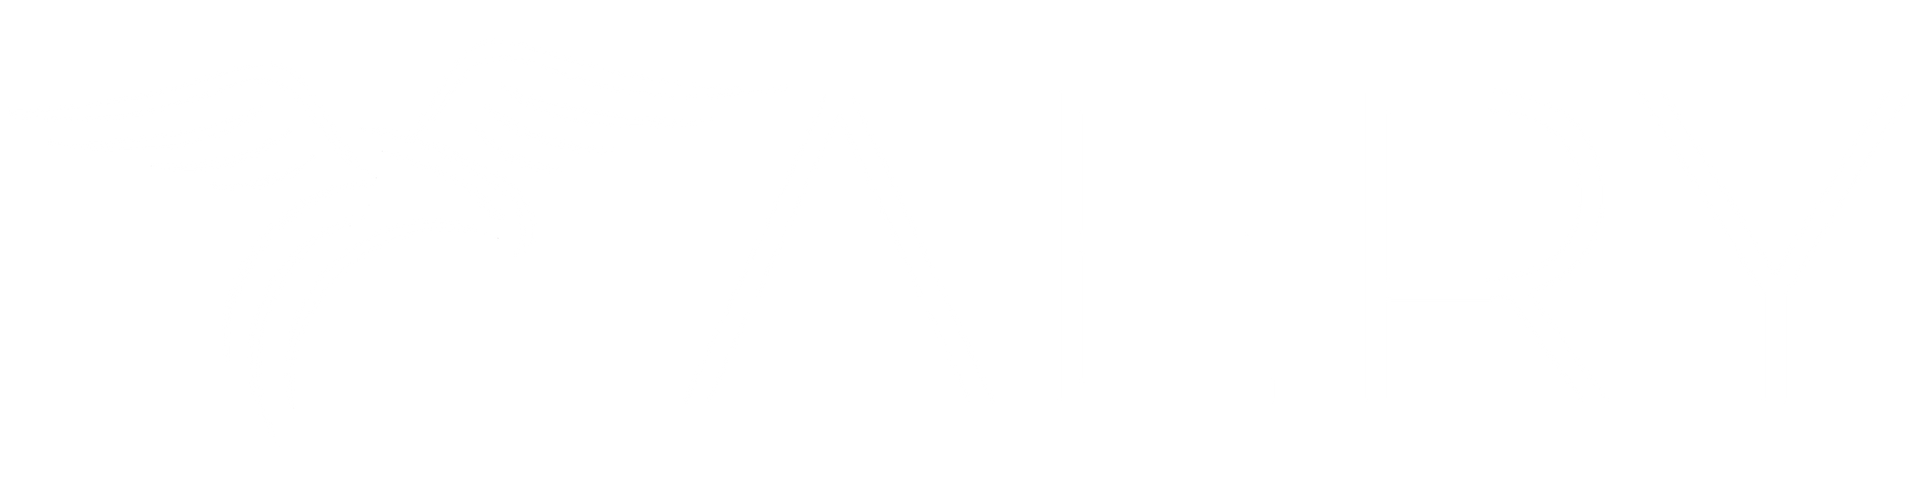 Aery logo White